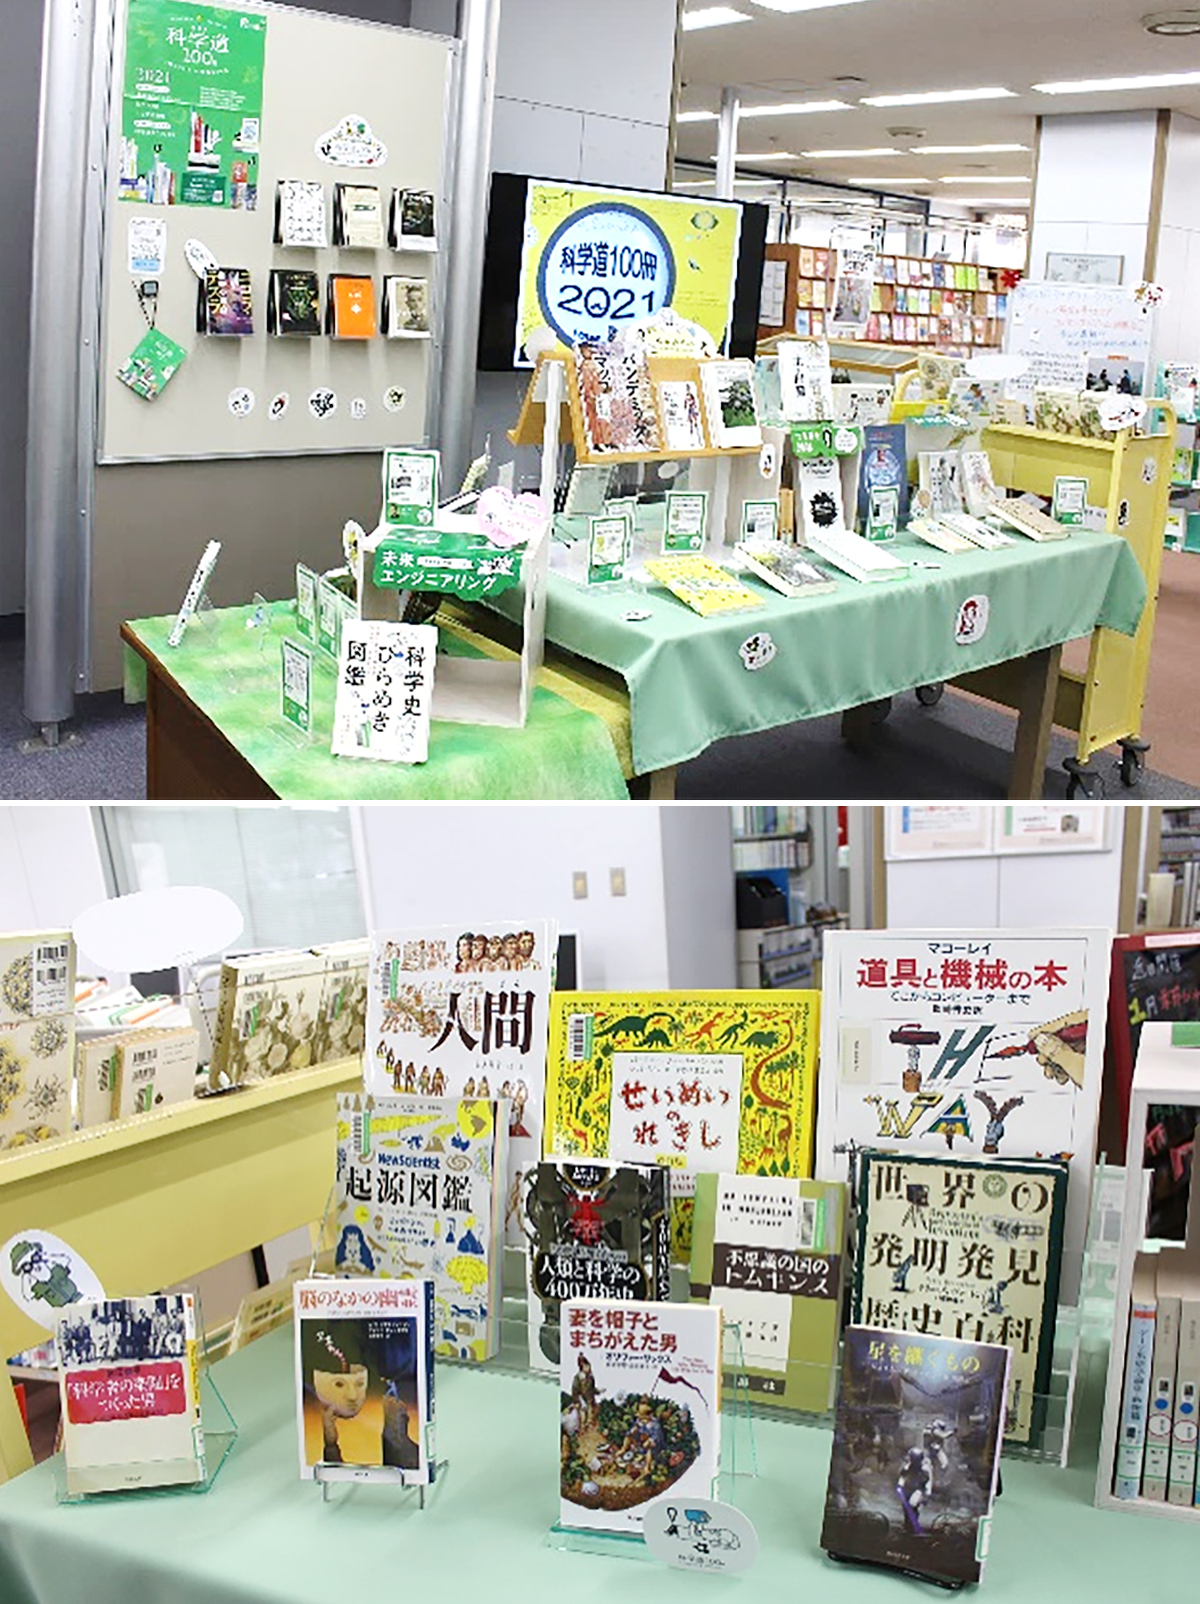 城西大学水田記念図書館の展示風景